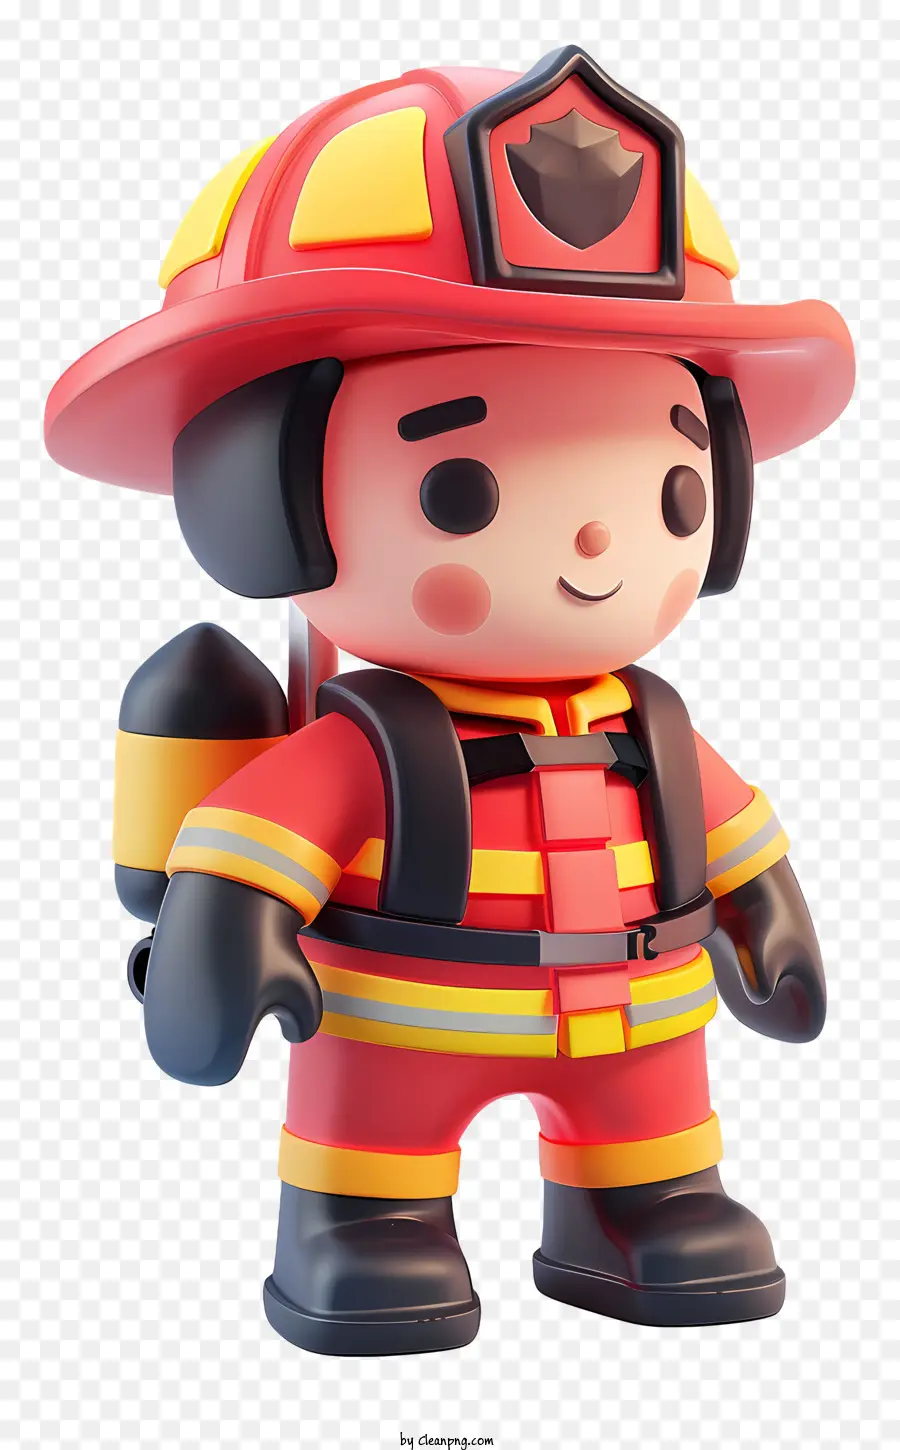 Petugas Pemadam Kebakaran，Pemadam Kebakaran PNG